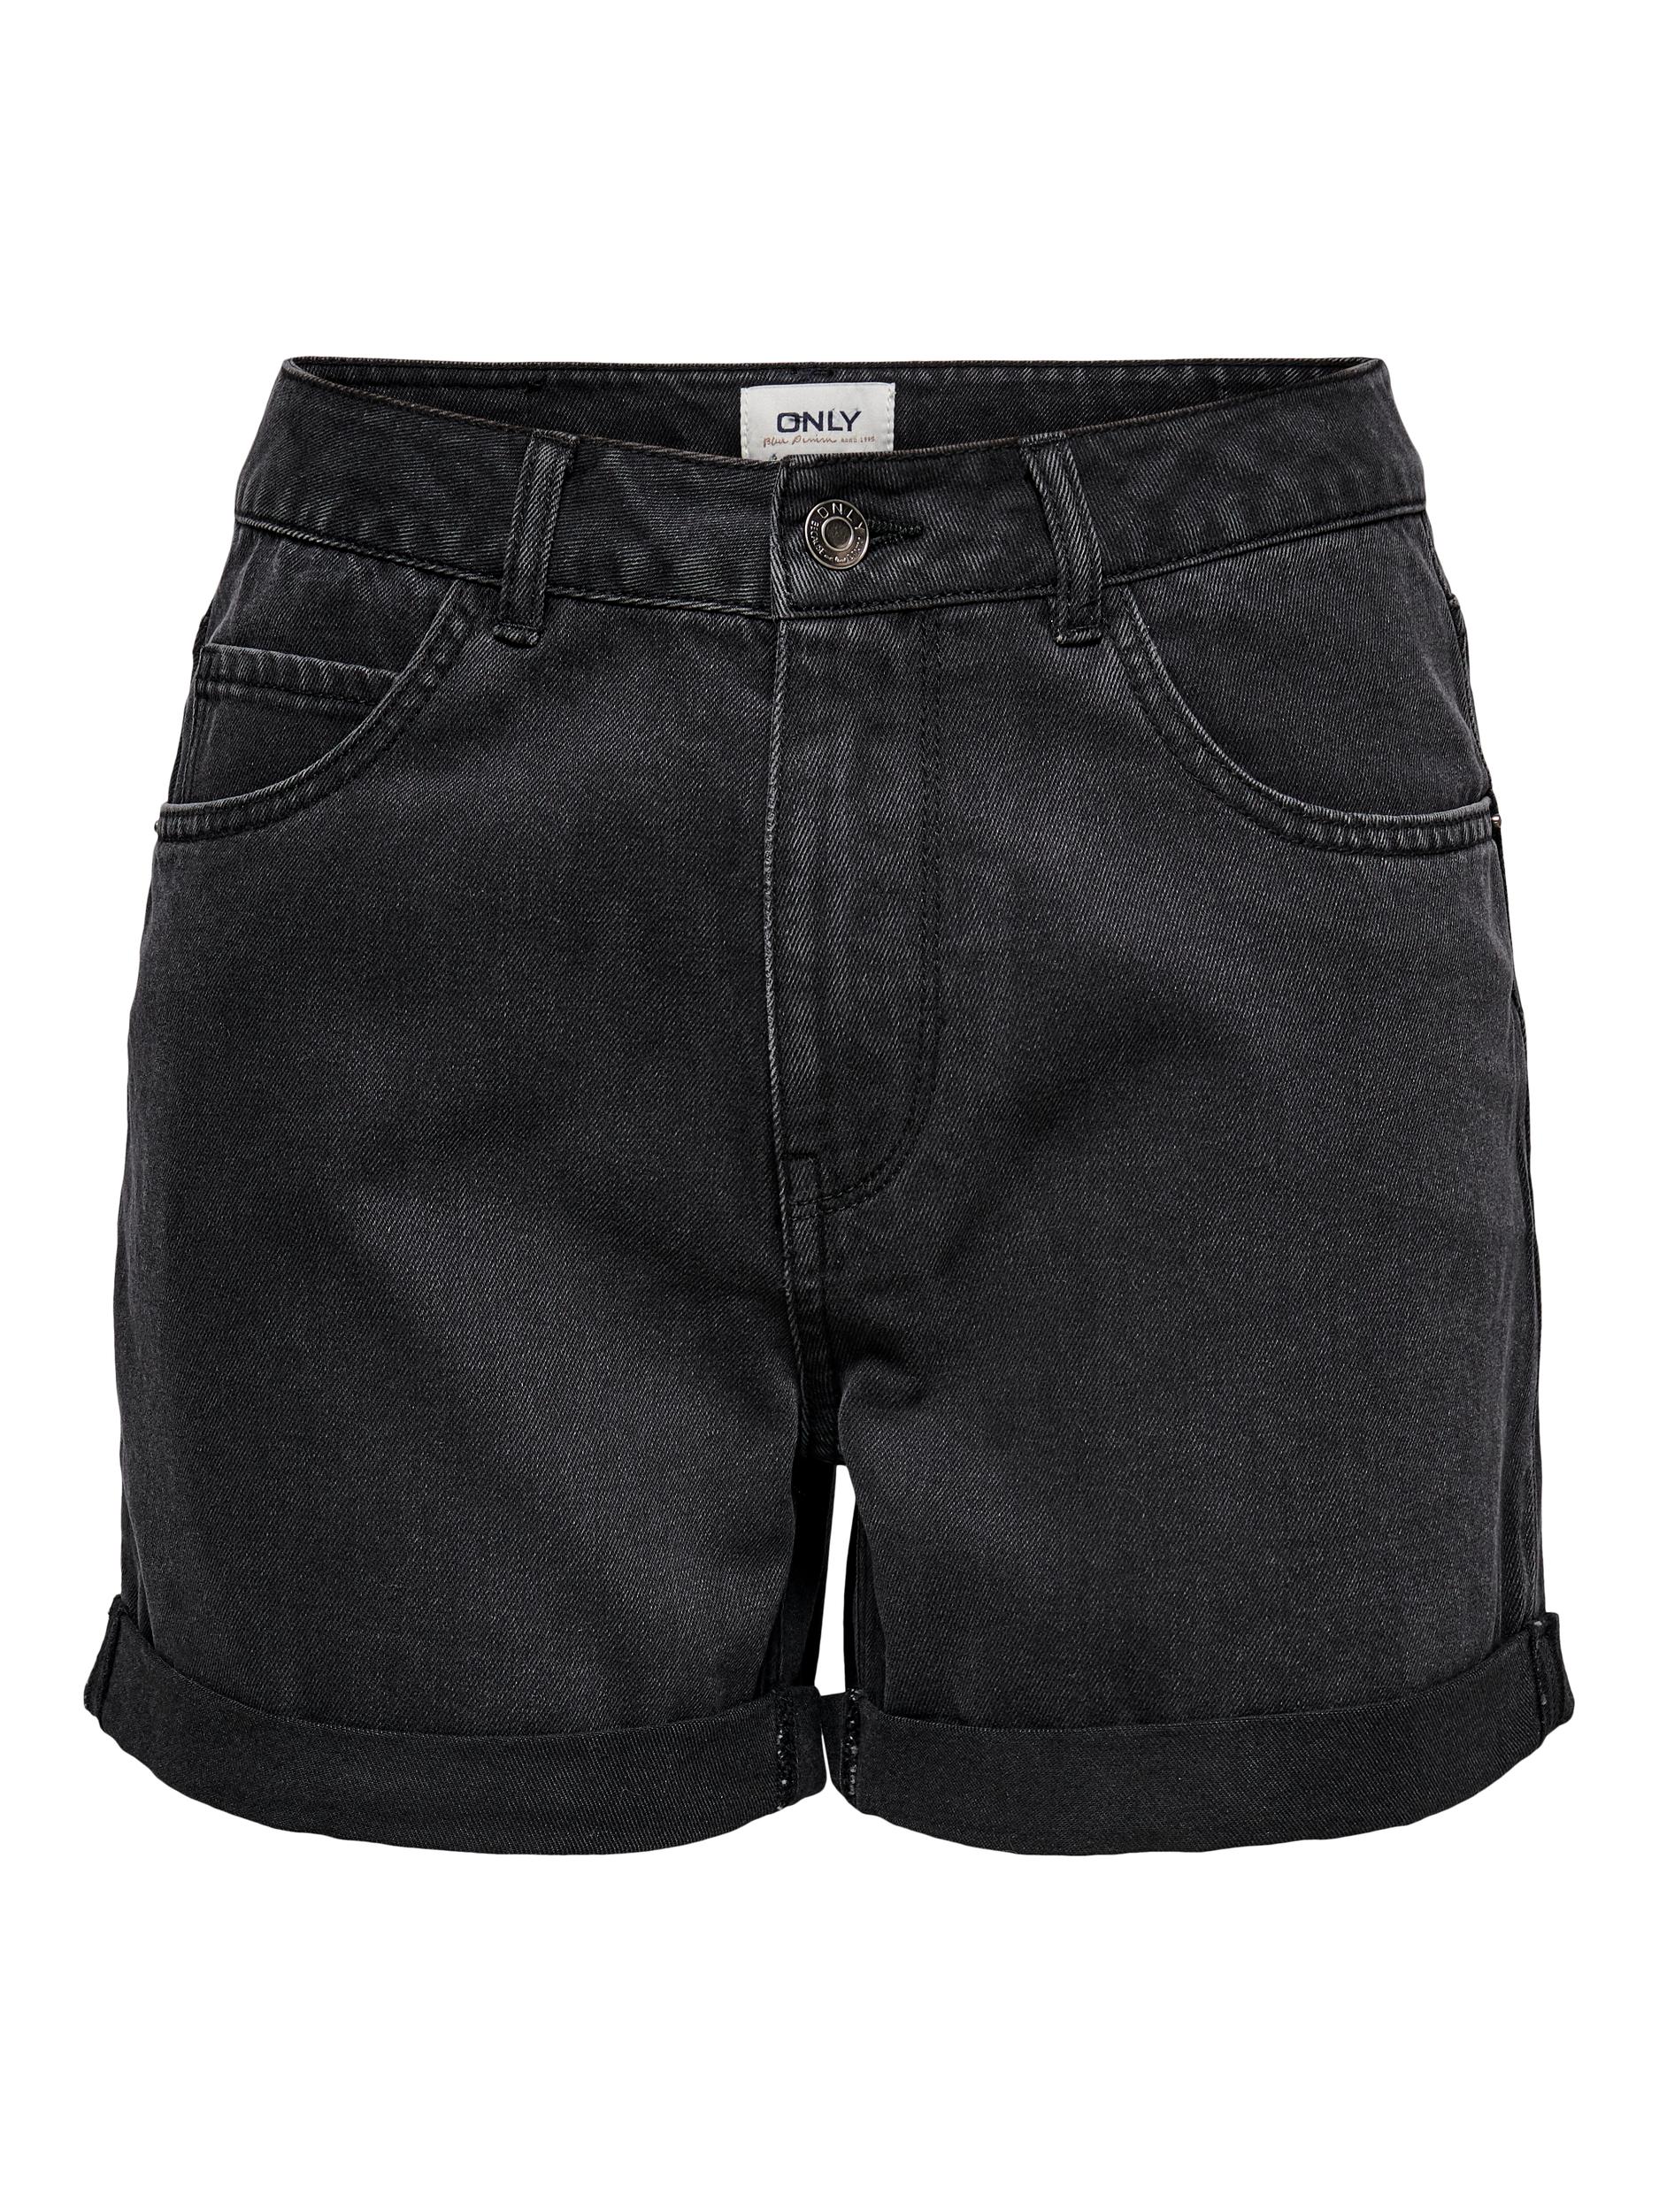 FINAL SALE - Vega mom fit denim shorts, BLACK, large